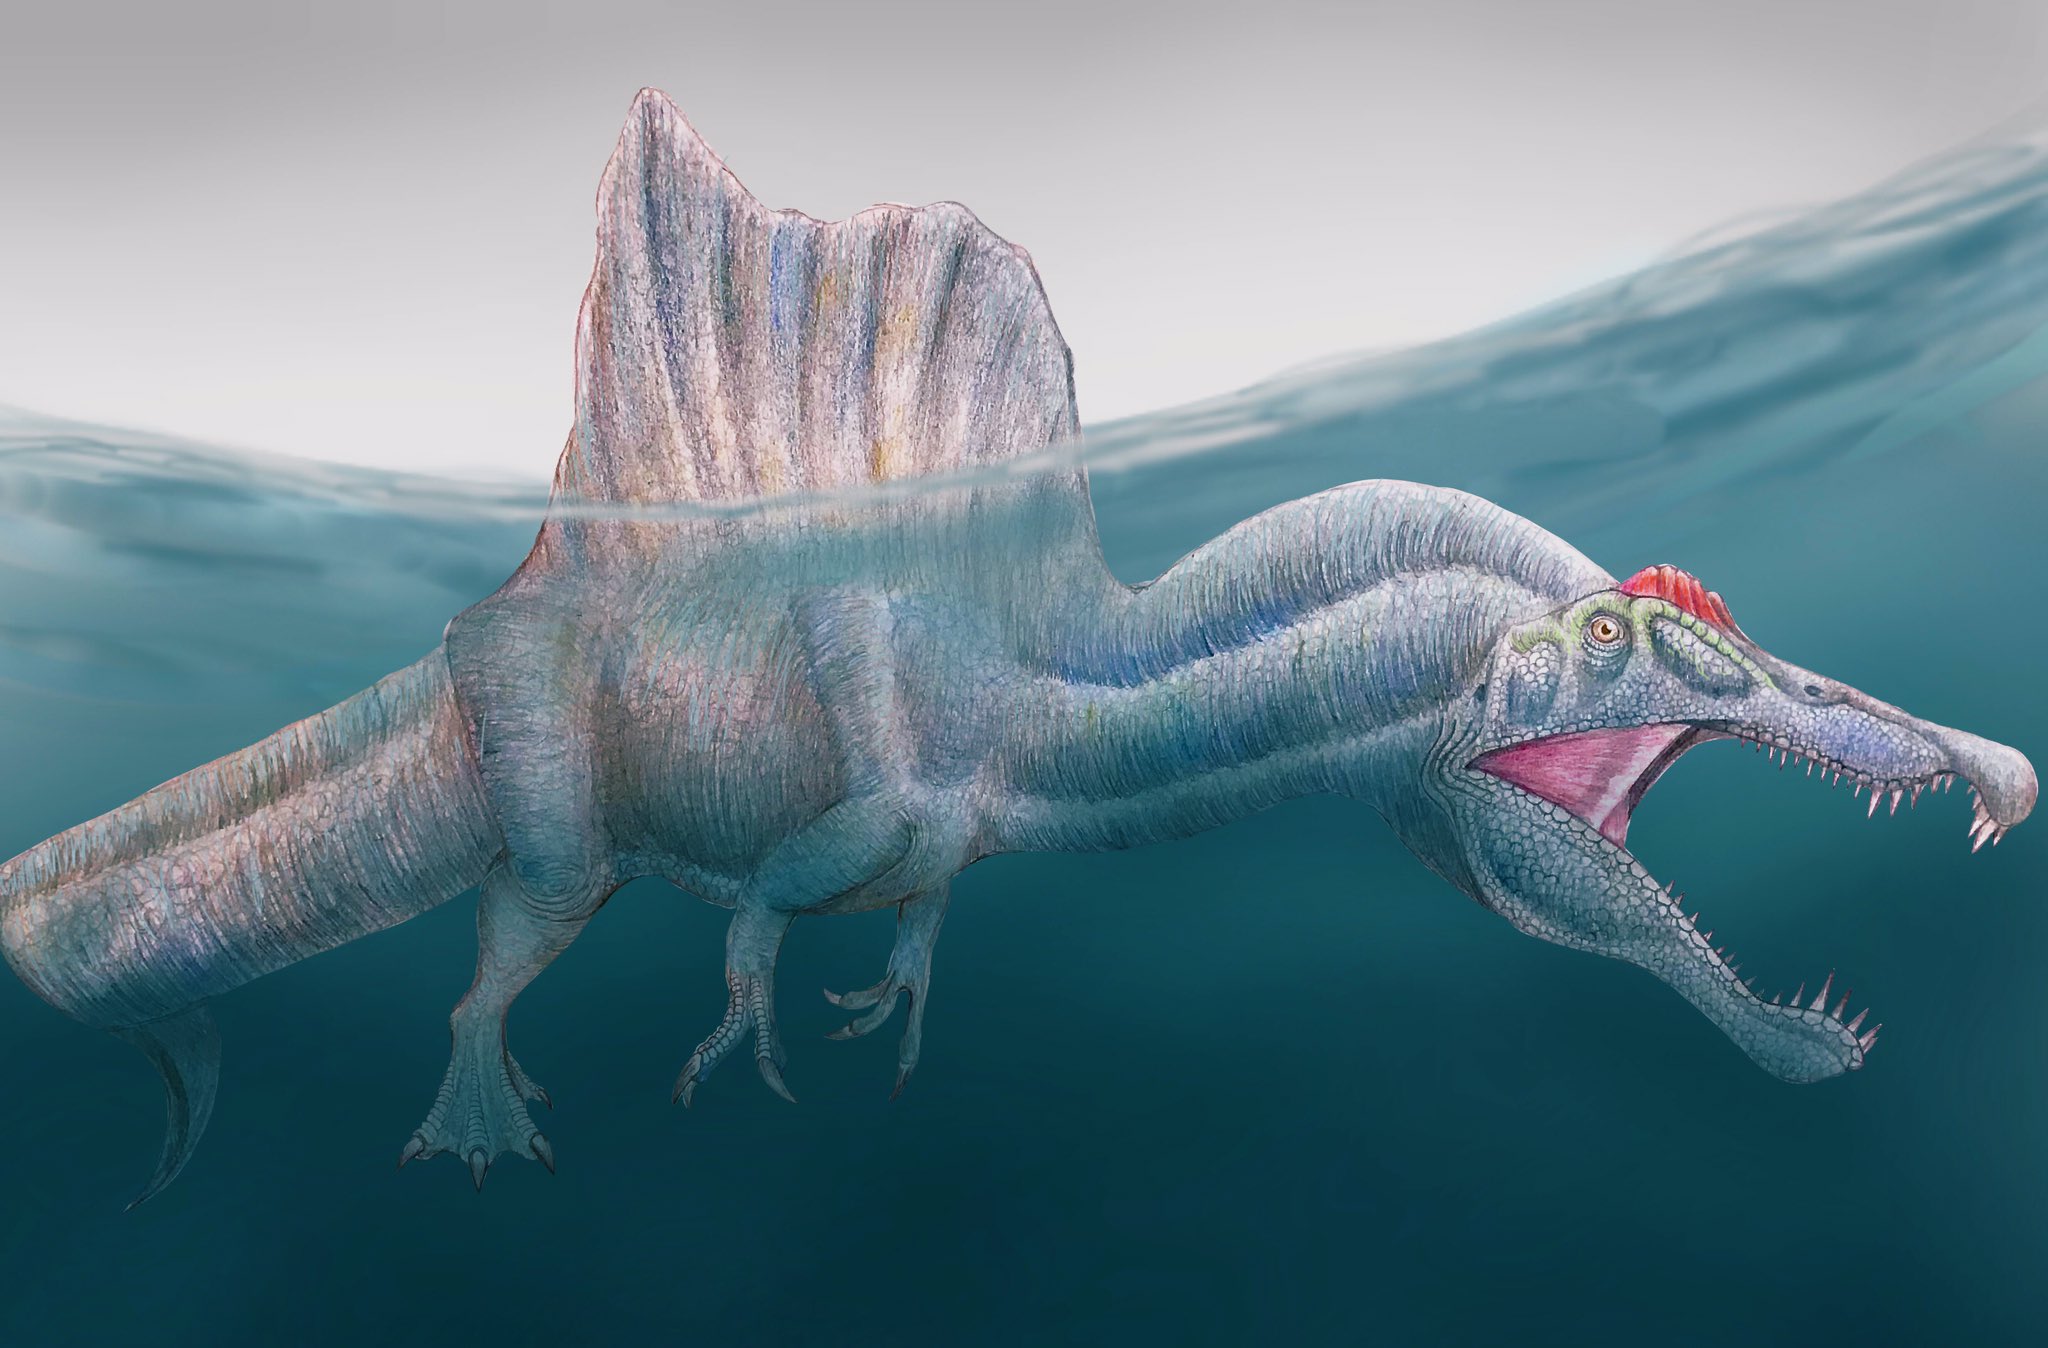 なぽりたん スピノサウルスを描きました 結構頑張った イラスト恐竜博物館 絵描きさんと繋がりたい T Co Lixh2jsvmq Twitter